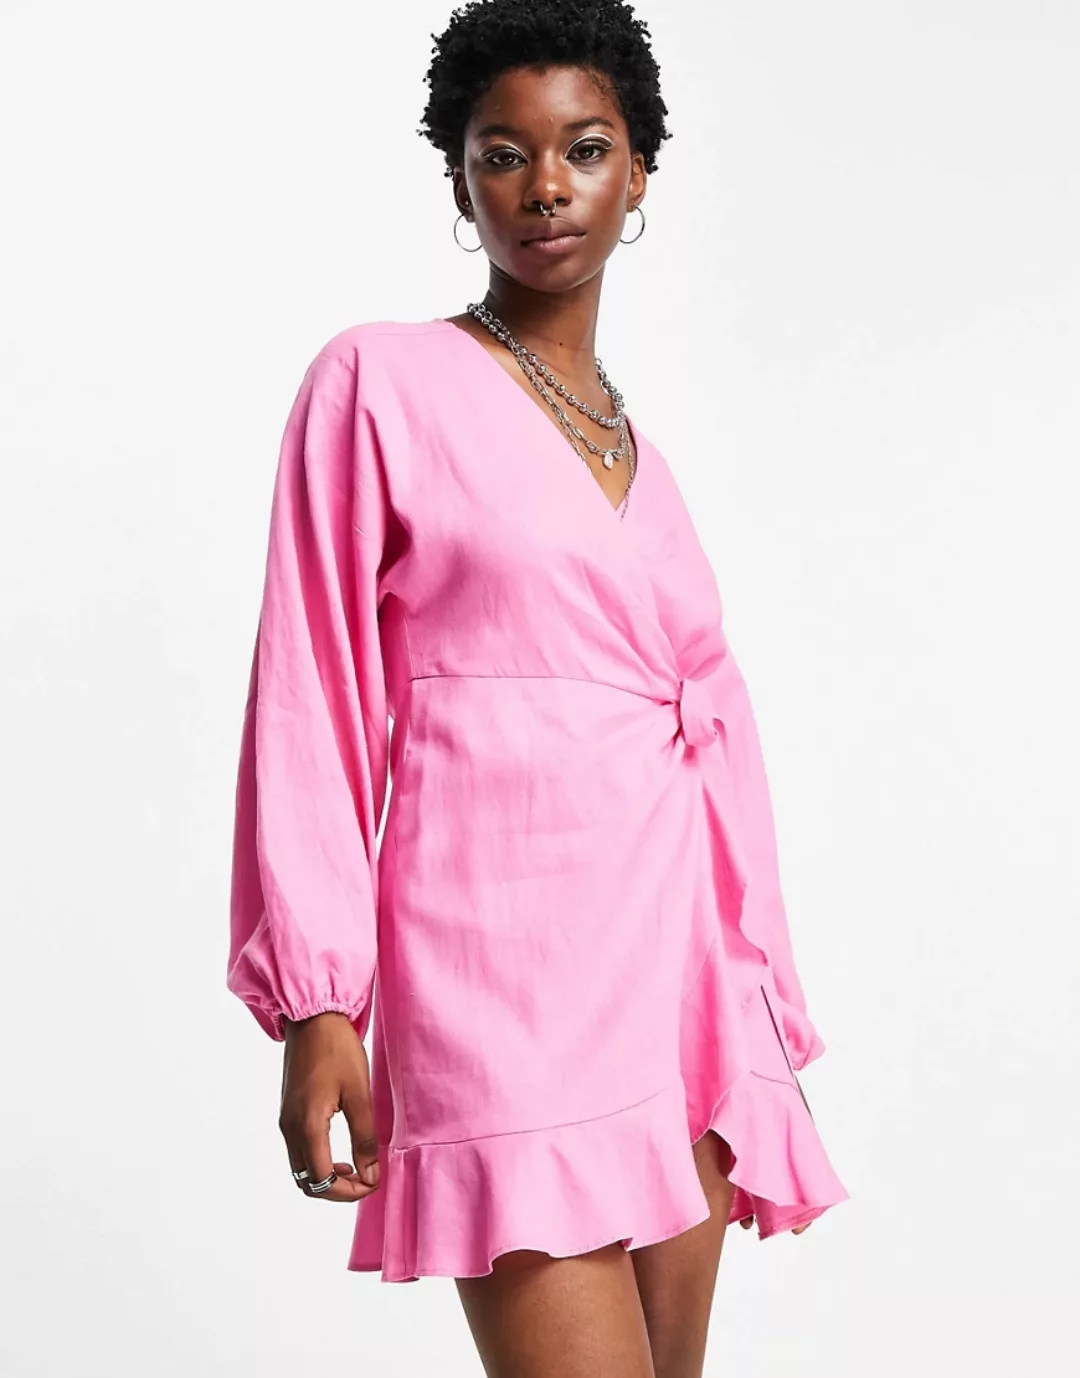 Topshop ‑ Mini-Wickelkleid mit weiten Ärmeln in leuchtendem Rosa günstig online kaufen